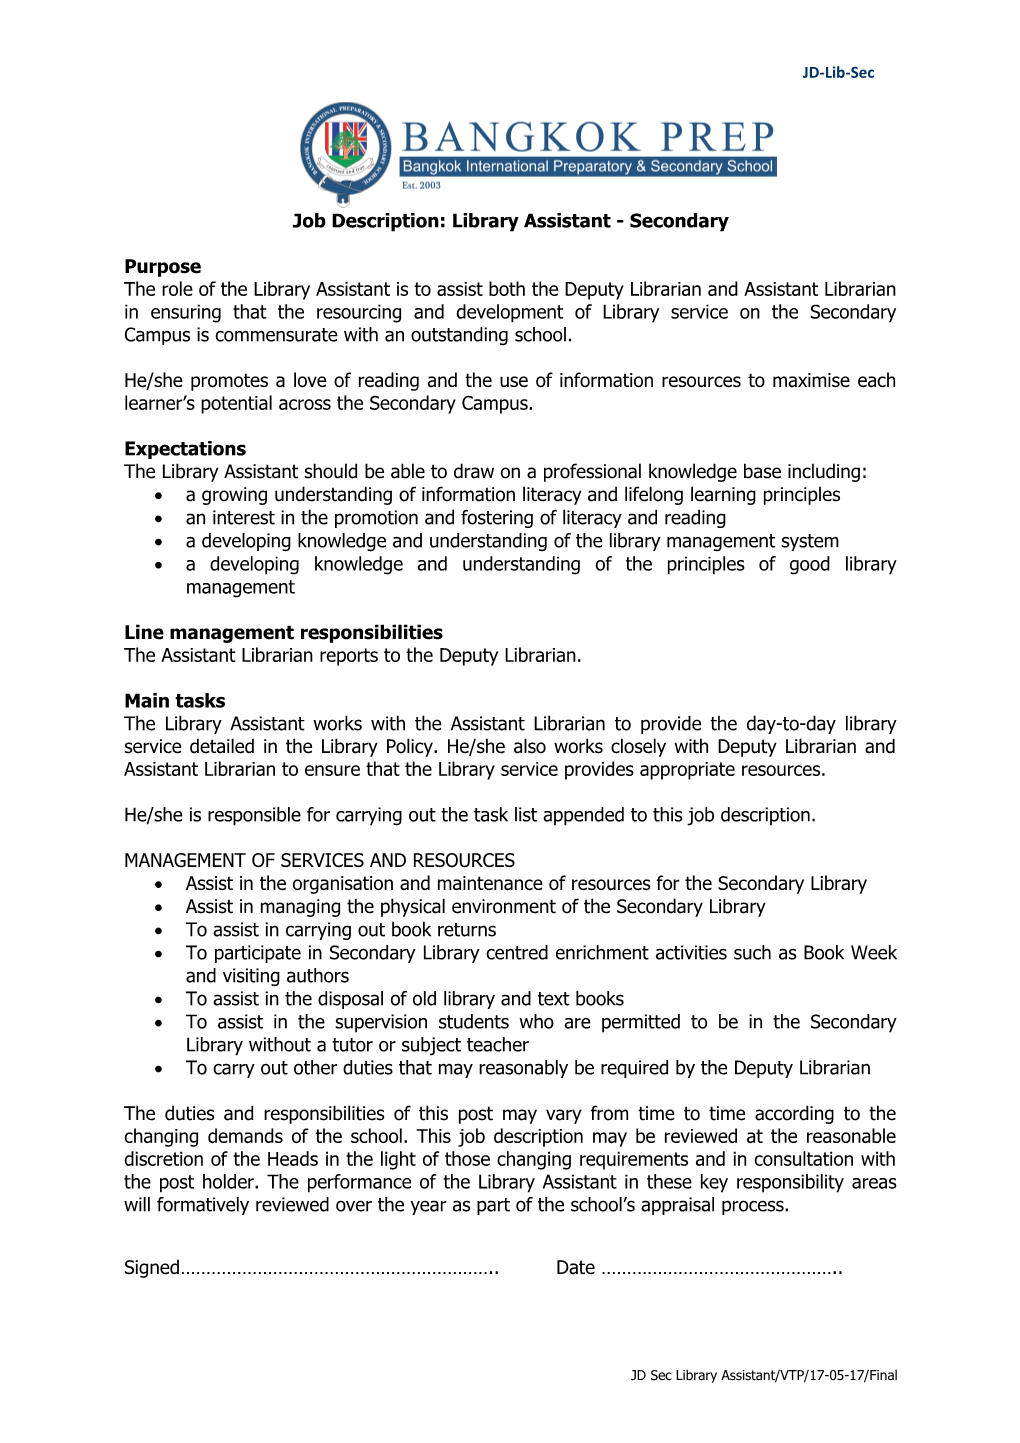 Job Description: Library Assistant- Secondary